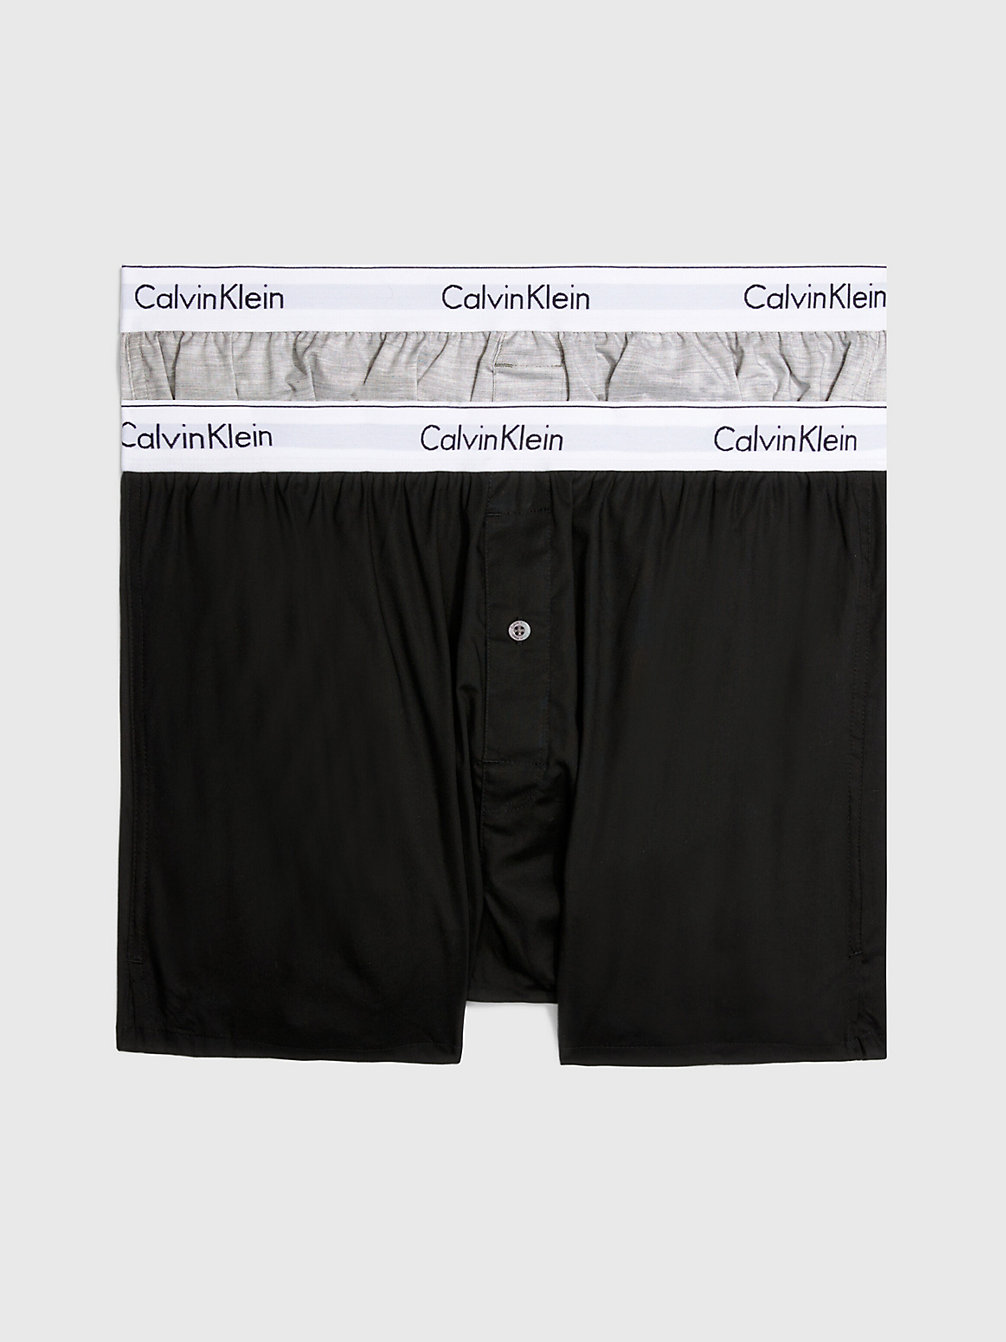 BLACK / GREY HEATHER 2er-Pack Slim Fit Boxershorts - Modern Cotton undefined Herren Calvin Klein